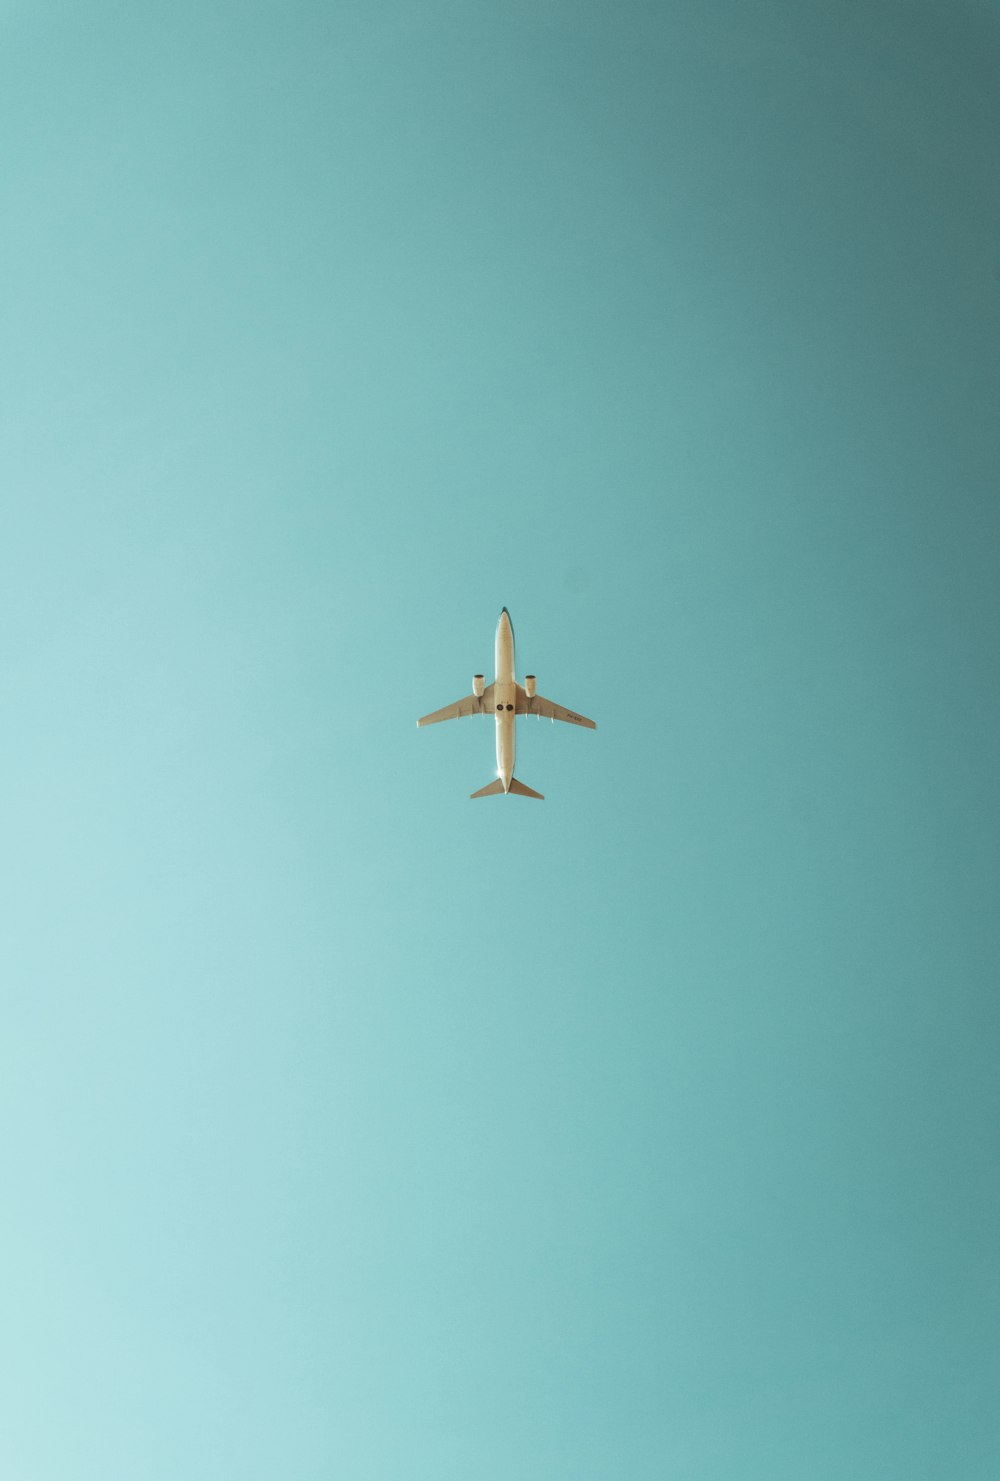 Imágenes de Plane Wallpaper | Descarga imágenes gratuitas en Unsplash